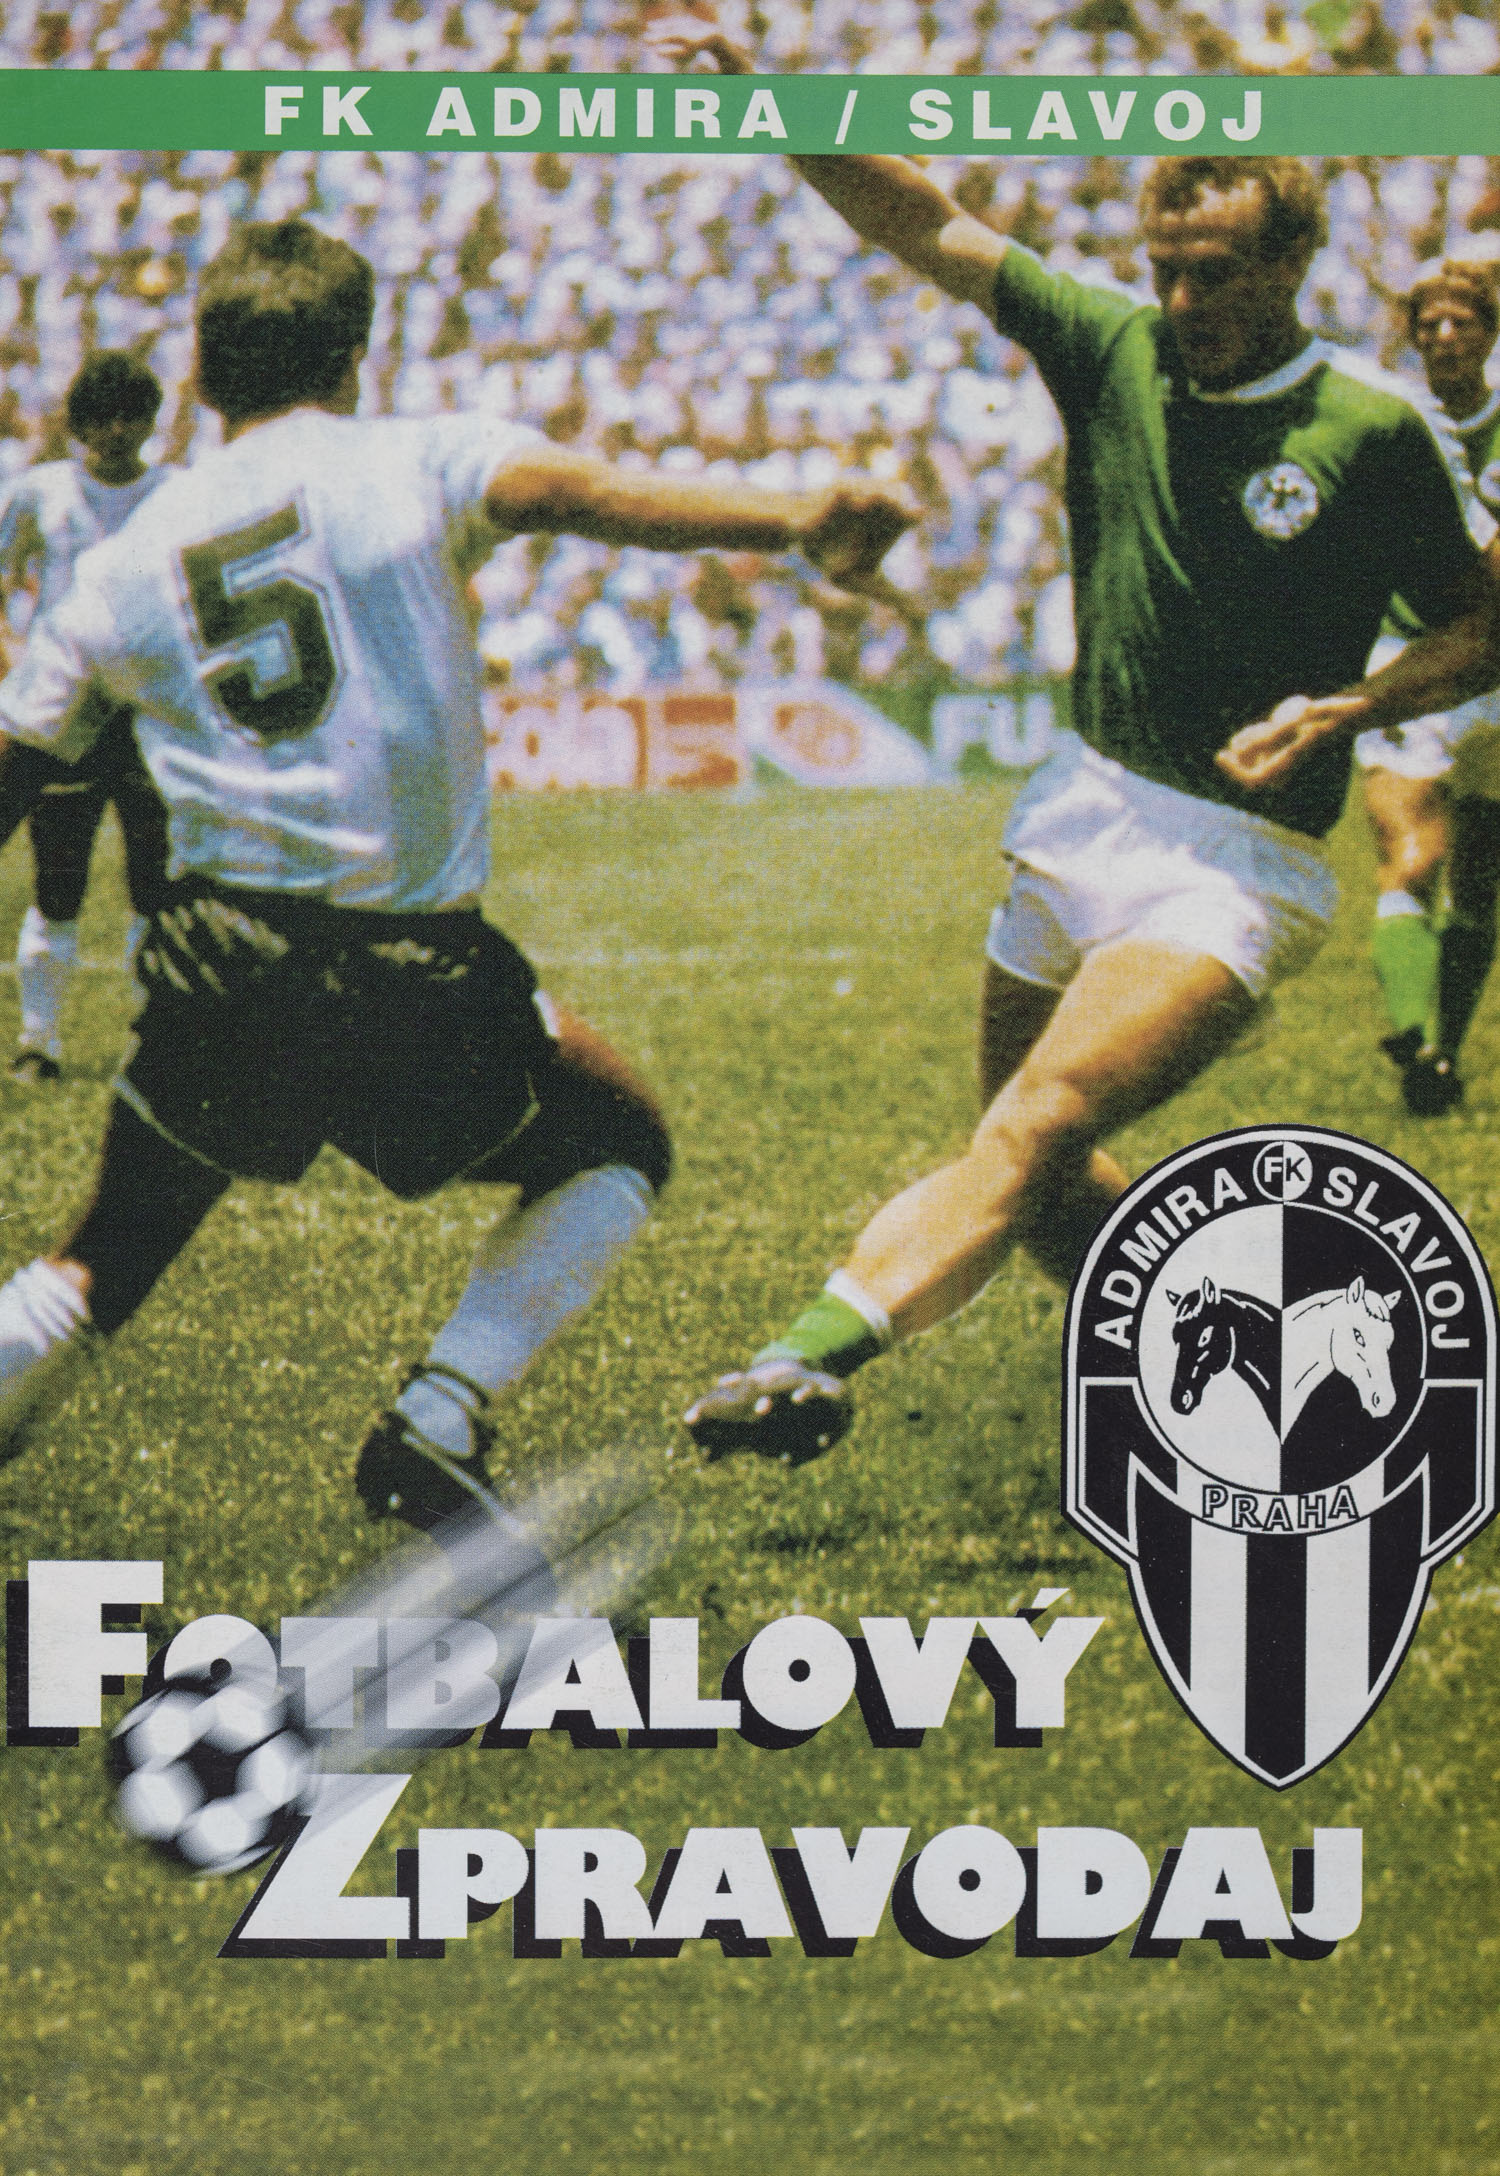 Fotbalový zpravodaj, FK Admira/Slavoj vs. AC Sparta Praha B, 1999